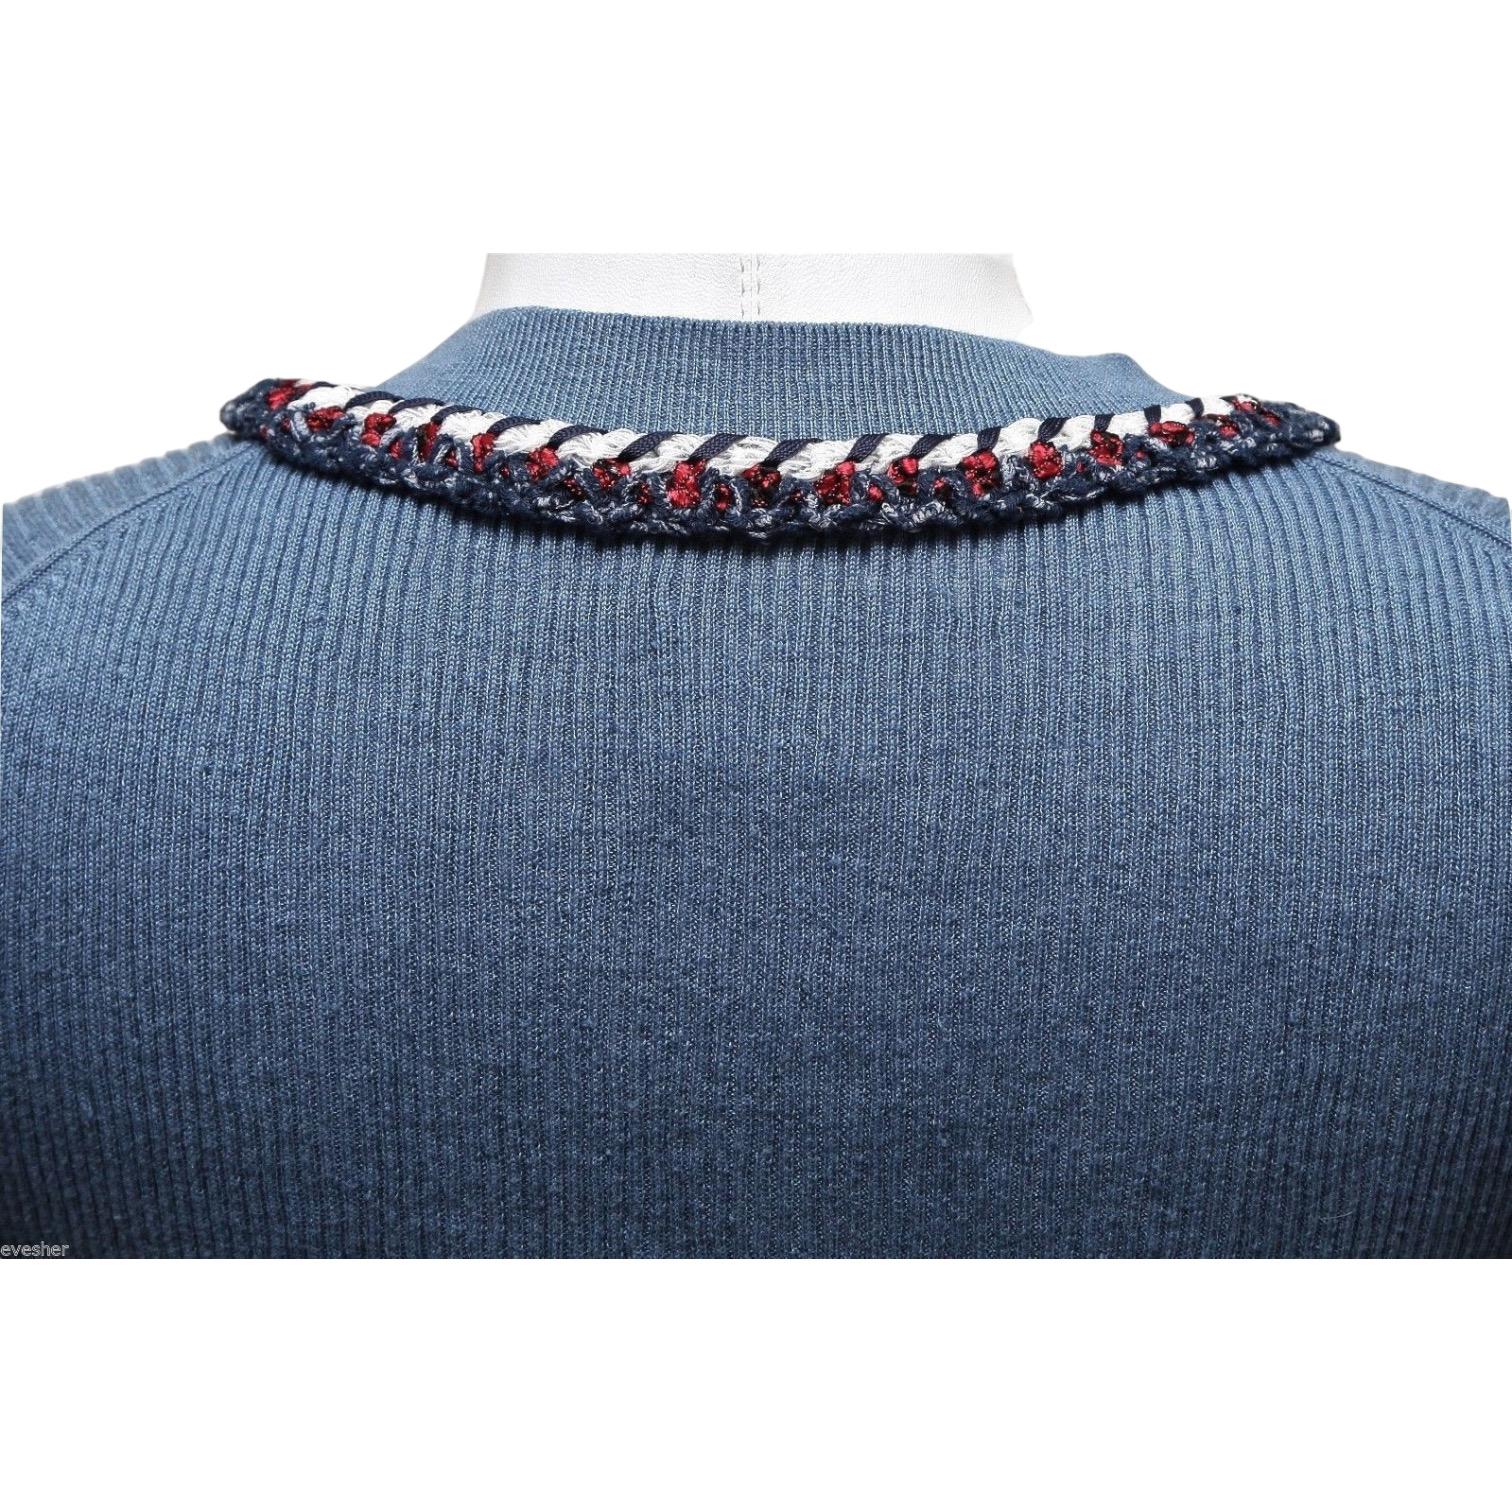 CHANEL Pull en tricot à manches longues rouge marine blanc bleu argenté HW 40 13C 2013 Pour femmes en vente